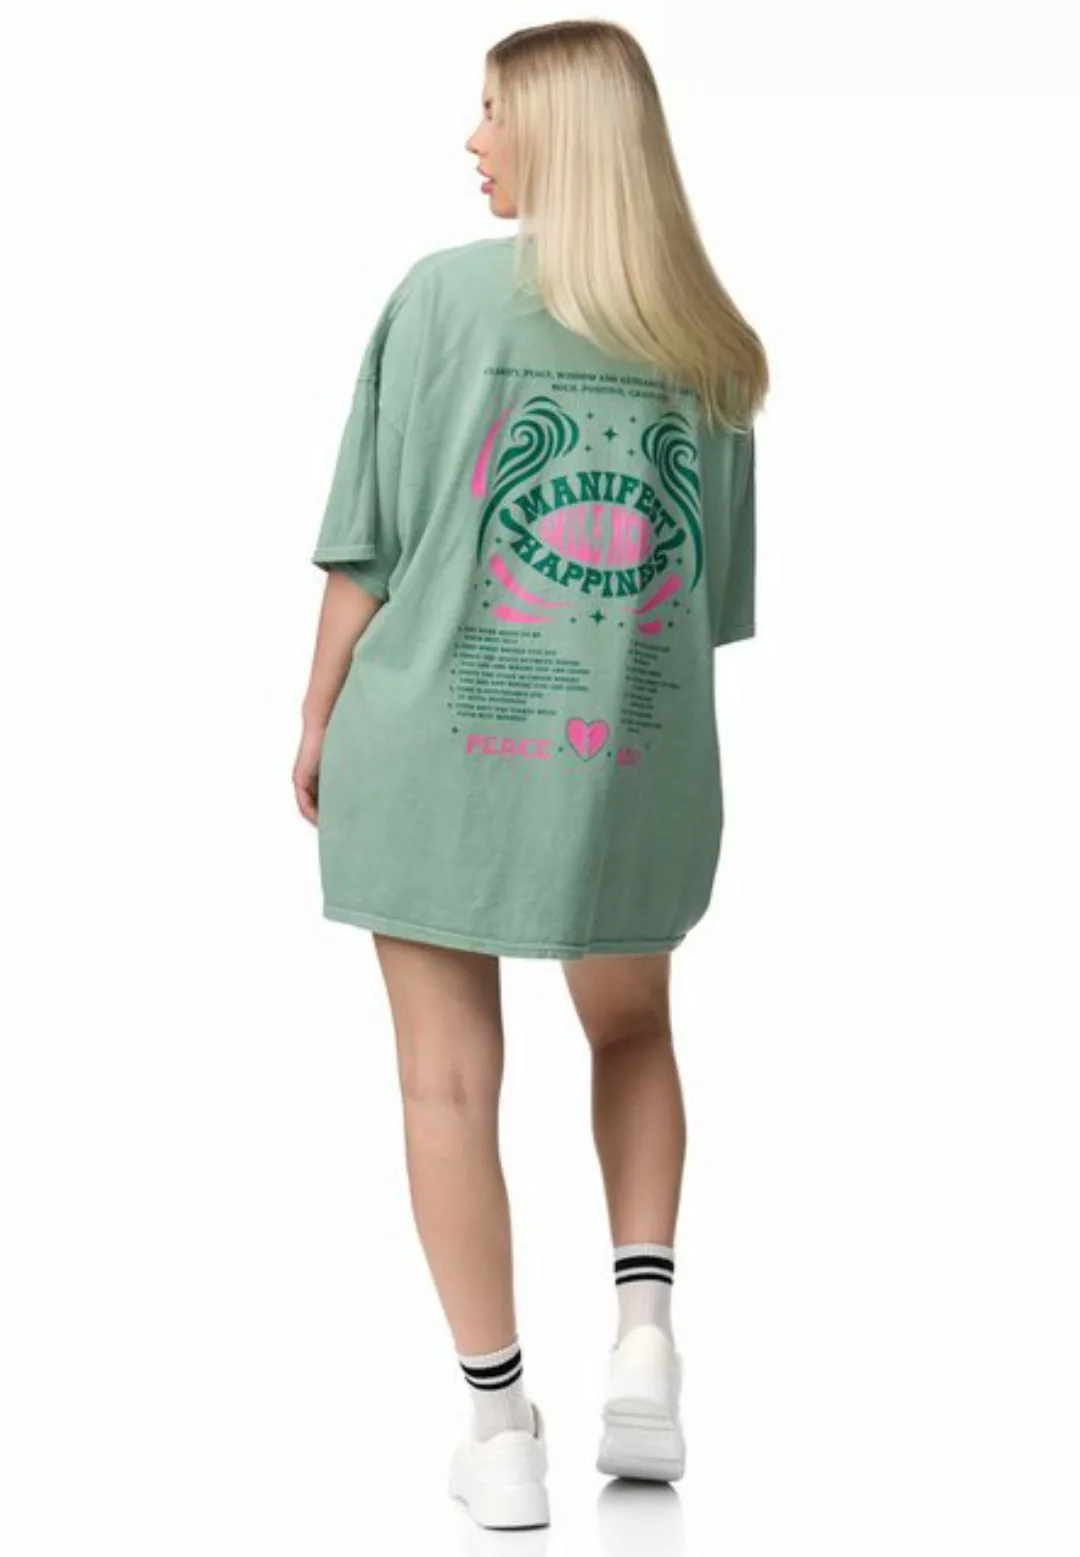 Worldclassca T-Shirt Worldclassca Oversized PEACE LOVE Print T-Shirt lang S günstig online kaufen